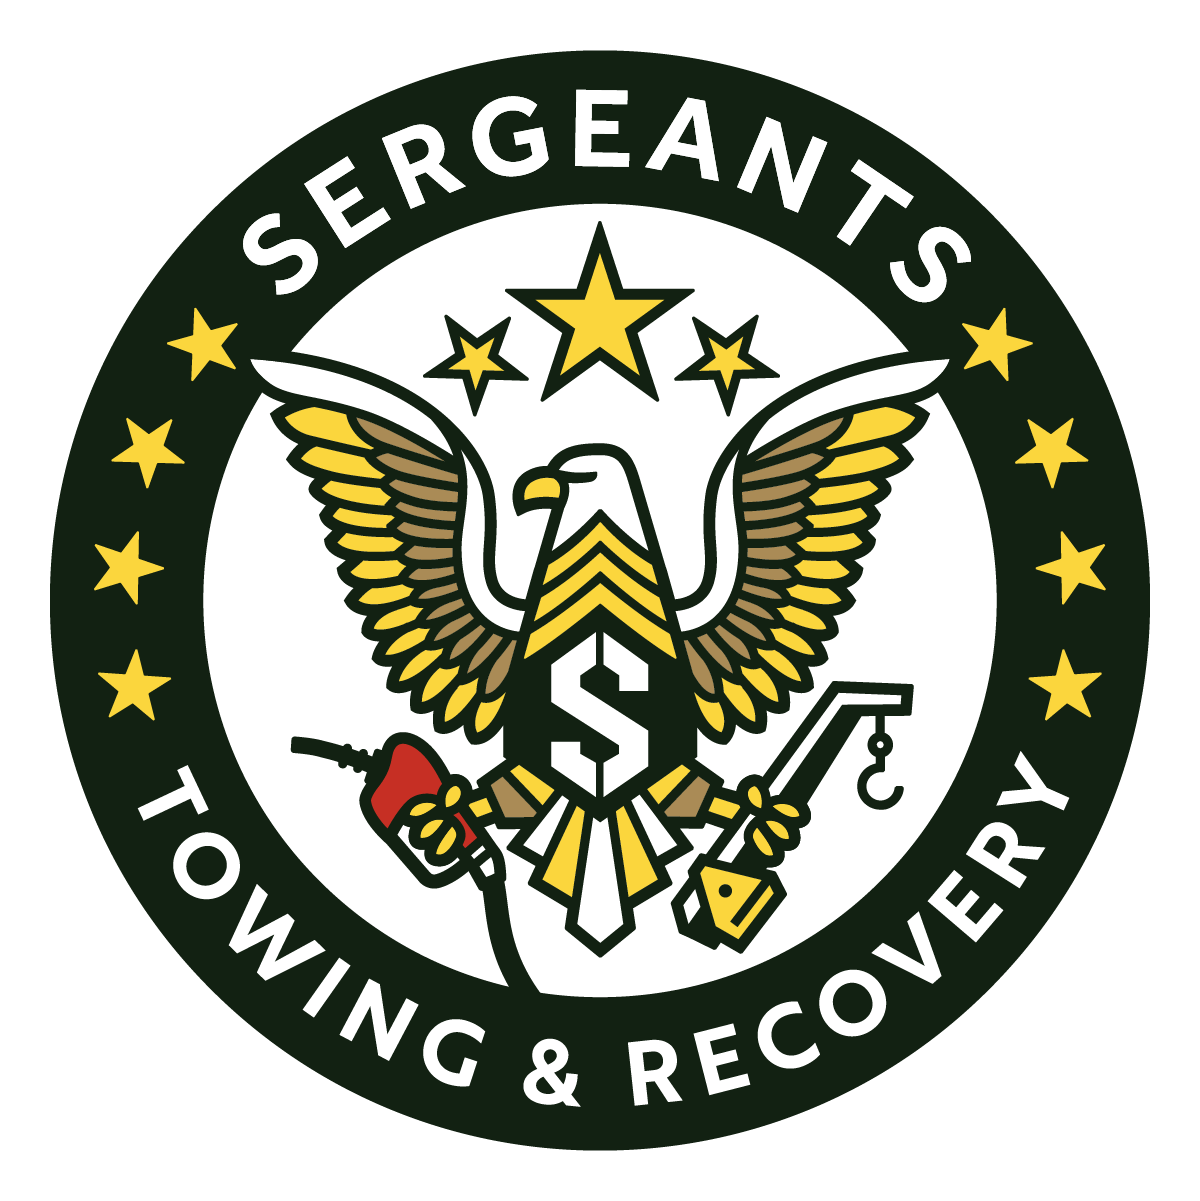 SERGEANTS-seal-T&R